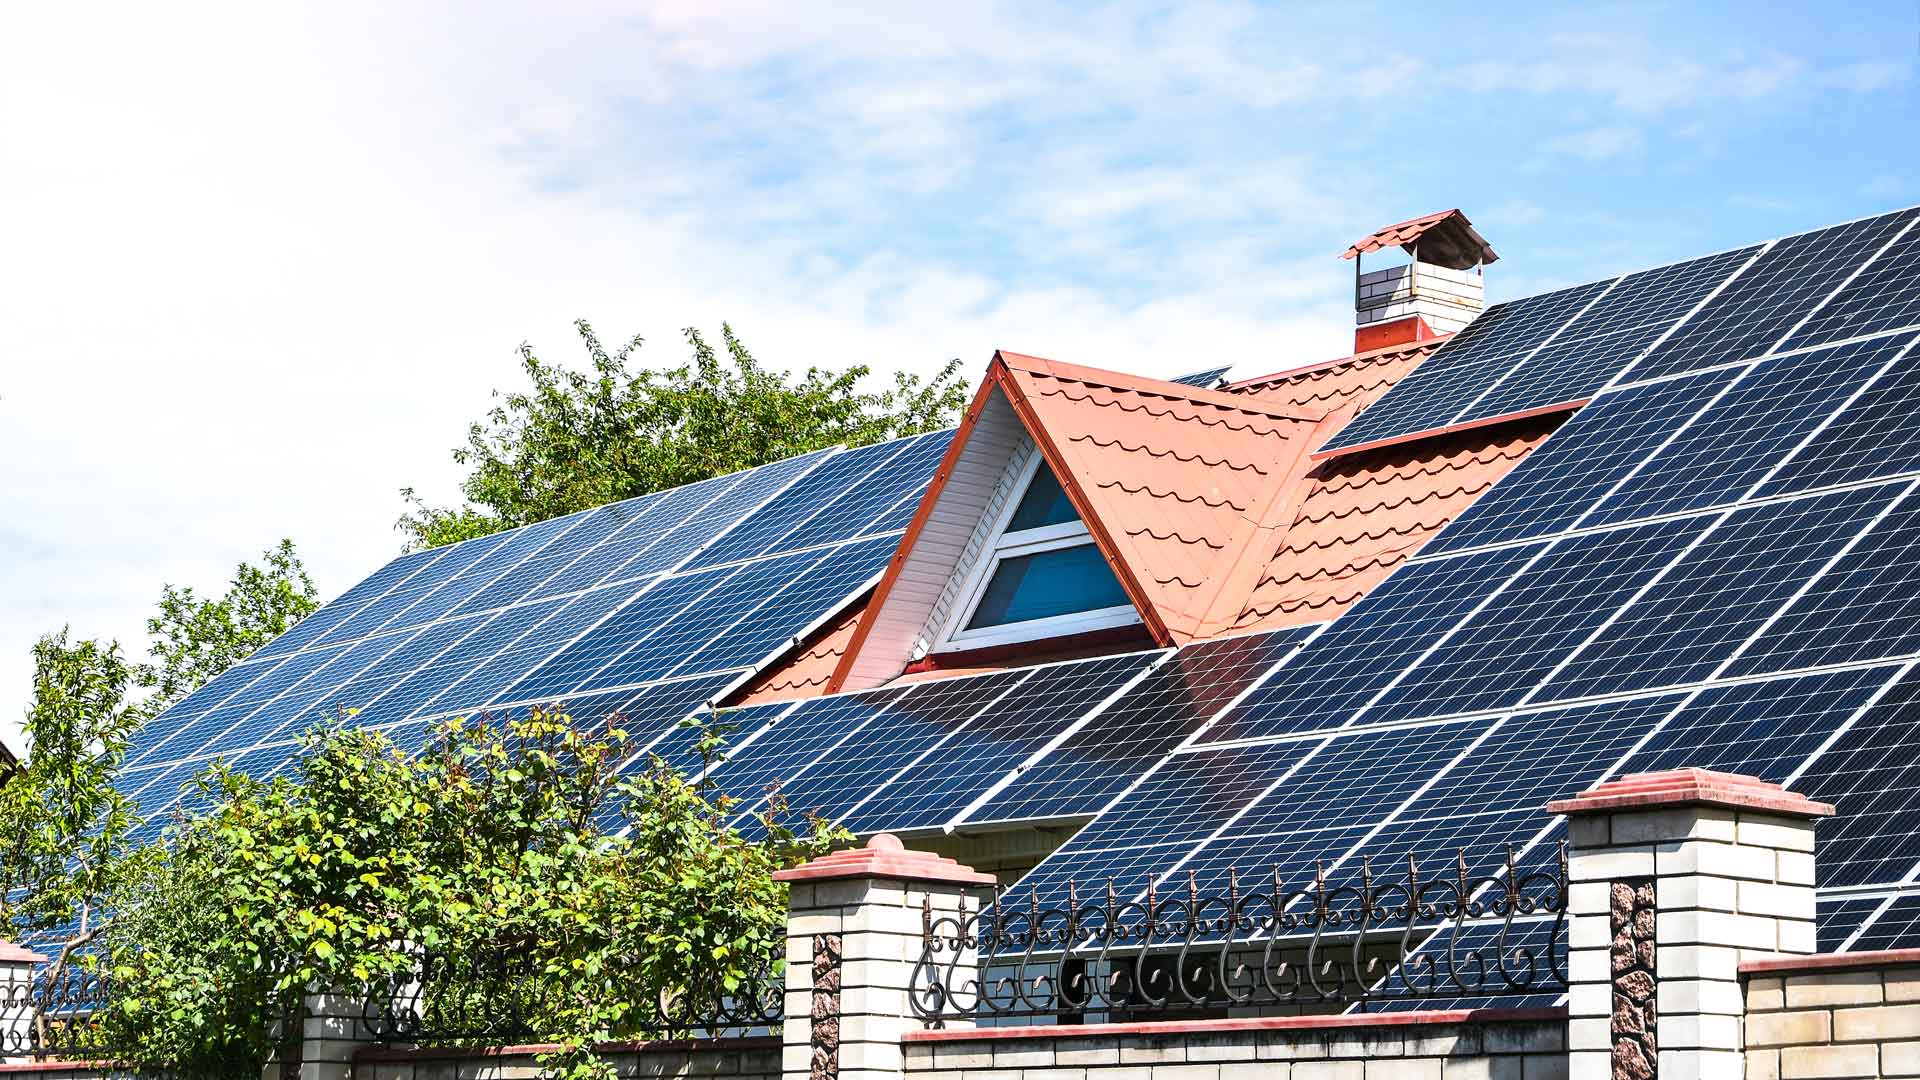 Que diferenças existem entre os sistemas solares fotovoltaico e térmico?